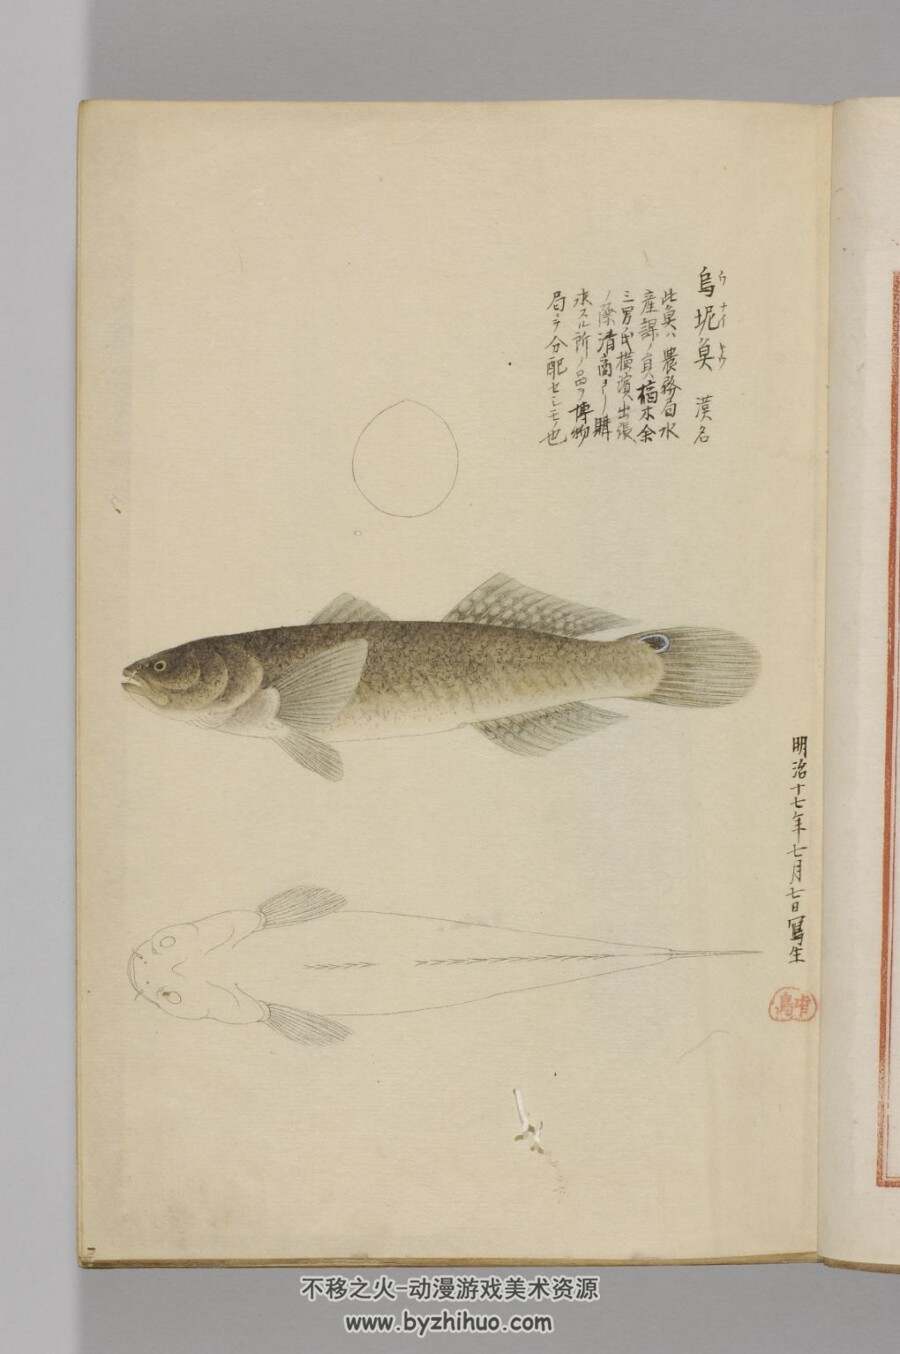 日本帝室博物馆编-鱼谱图 鱼类图谱绘画作品赏析 pdf百度网盘分享